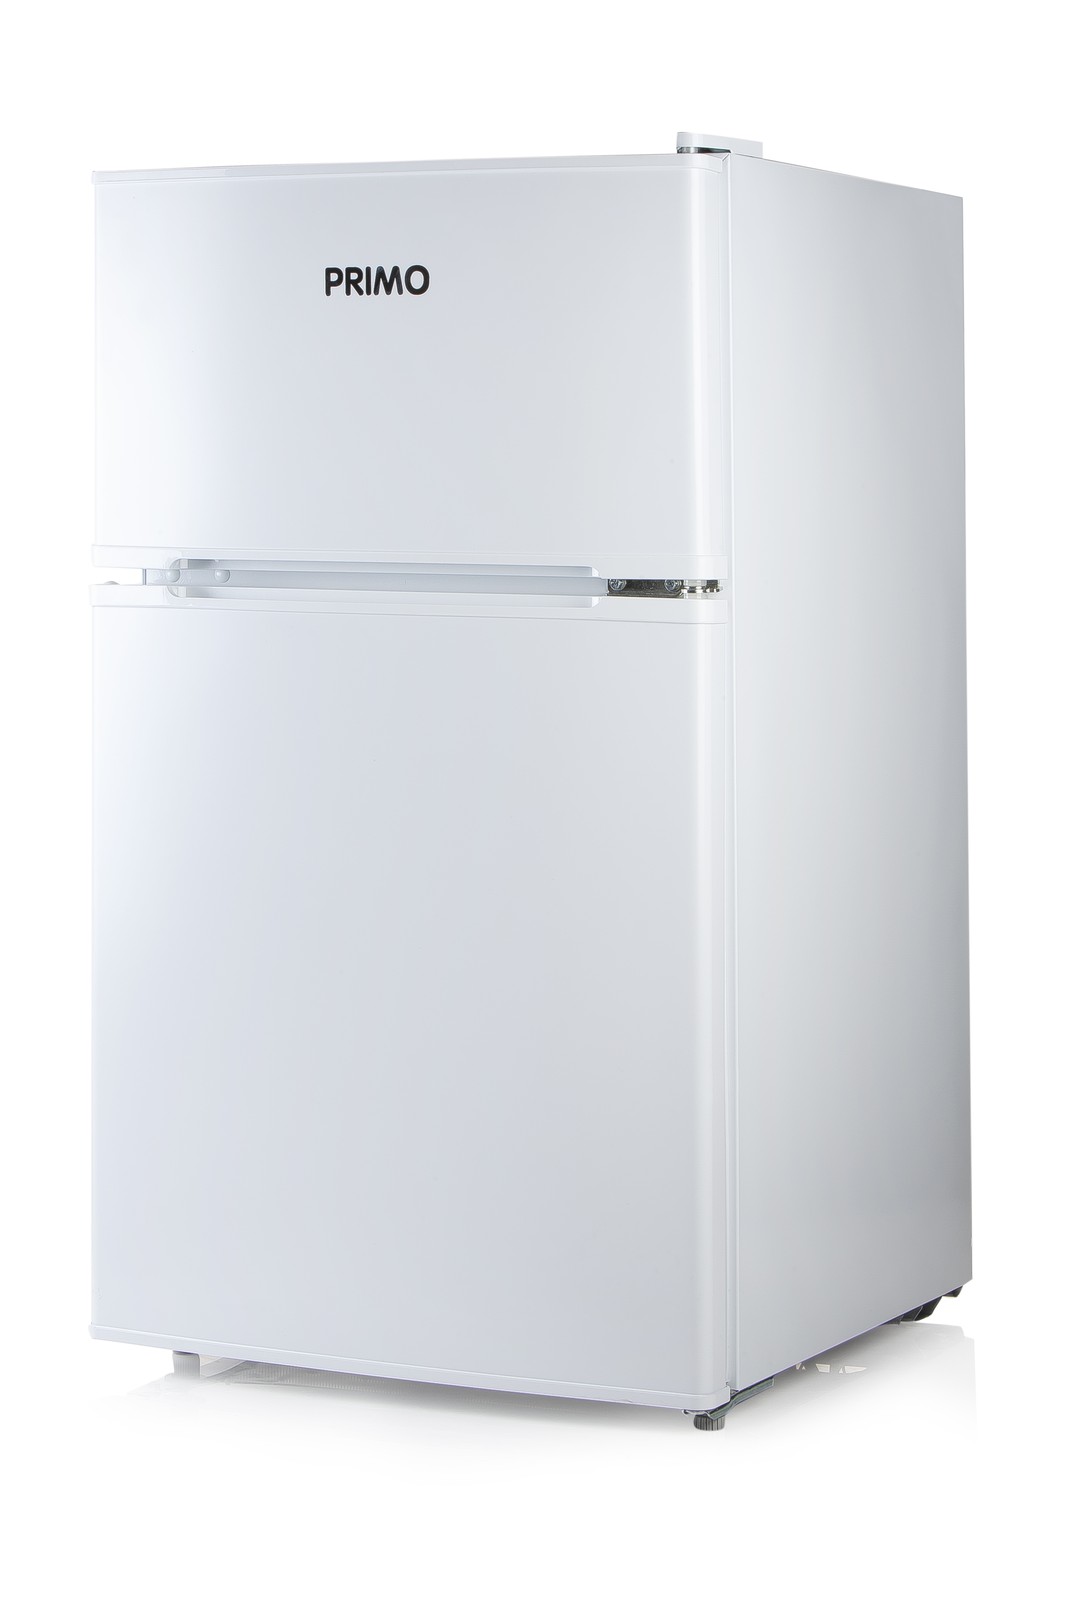 Lednice s mrazkem nahoe - bl - Primo PR156FR